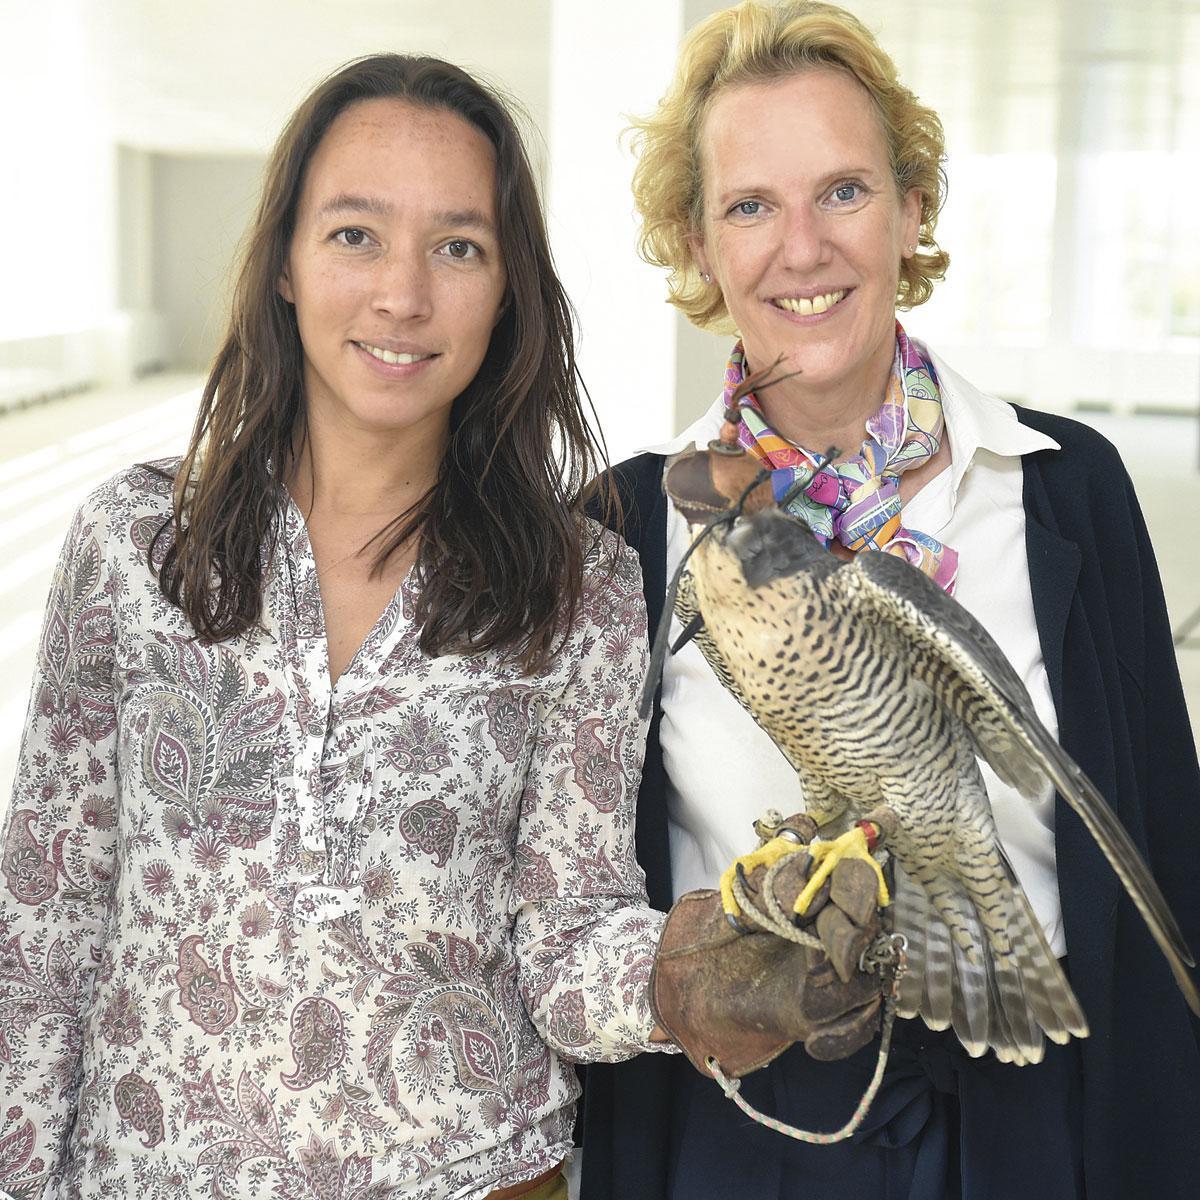 Les organisatrices de l'événement avec l'oiseau du jour: Kathrine Jacobs de Metis Communication et Florence Legein de FLConsult.